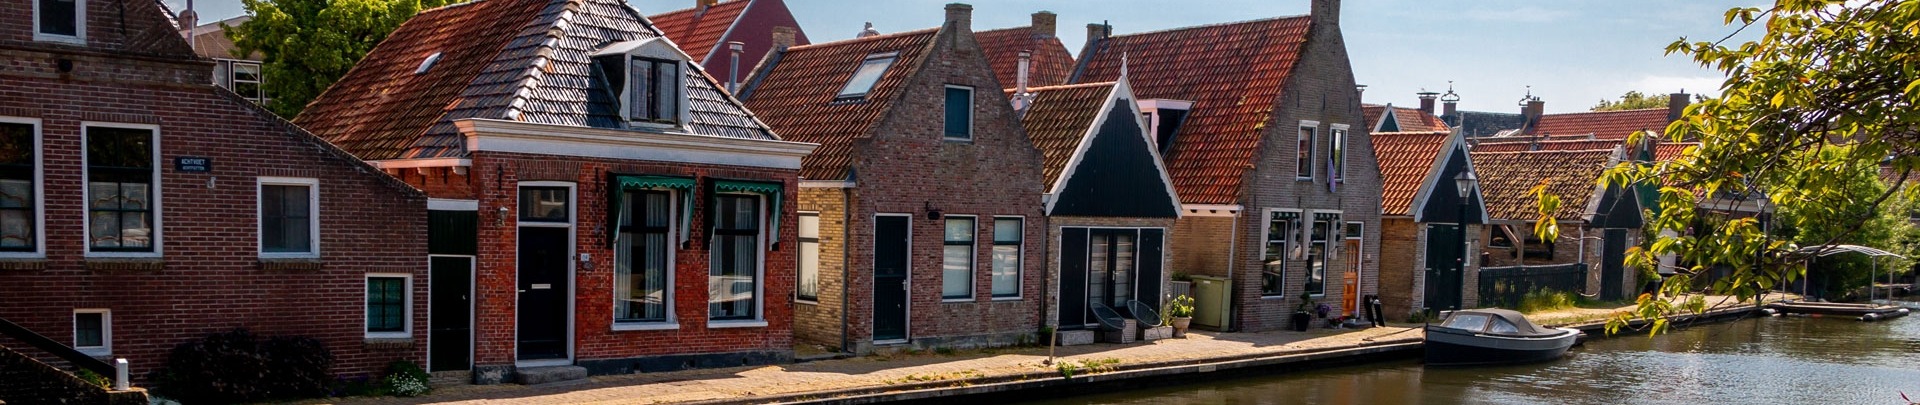 huisjes in een mooi dorp in Nederland